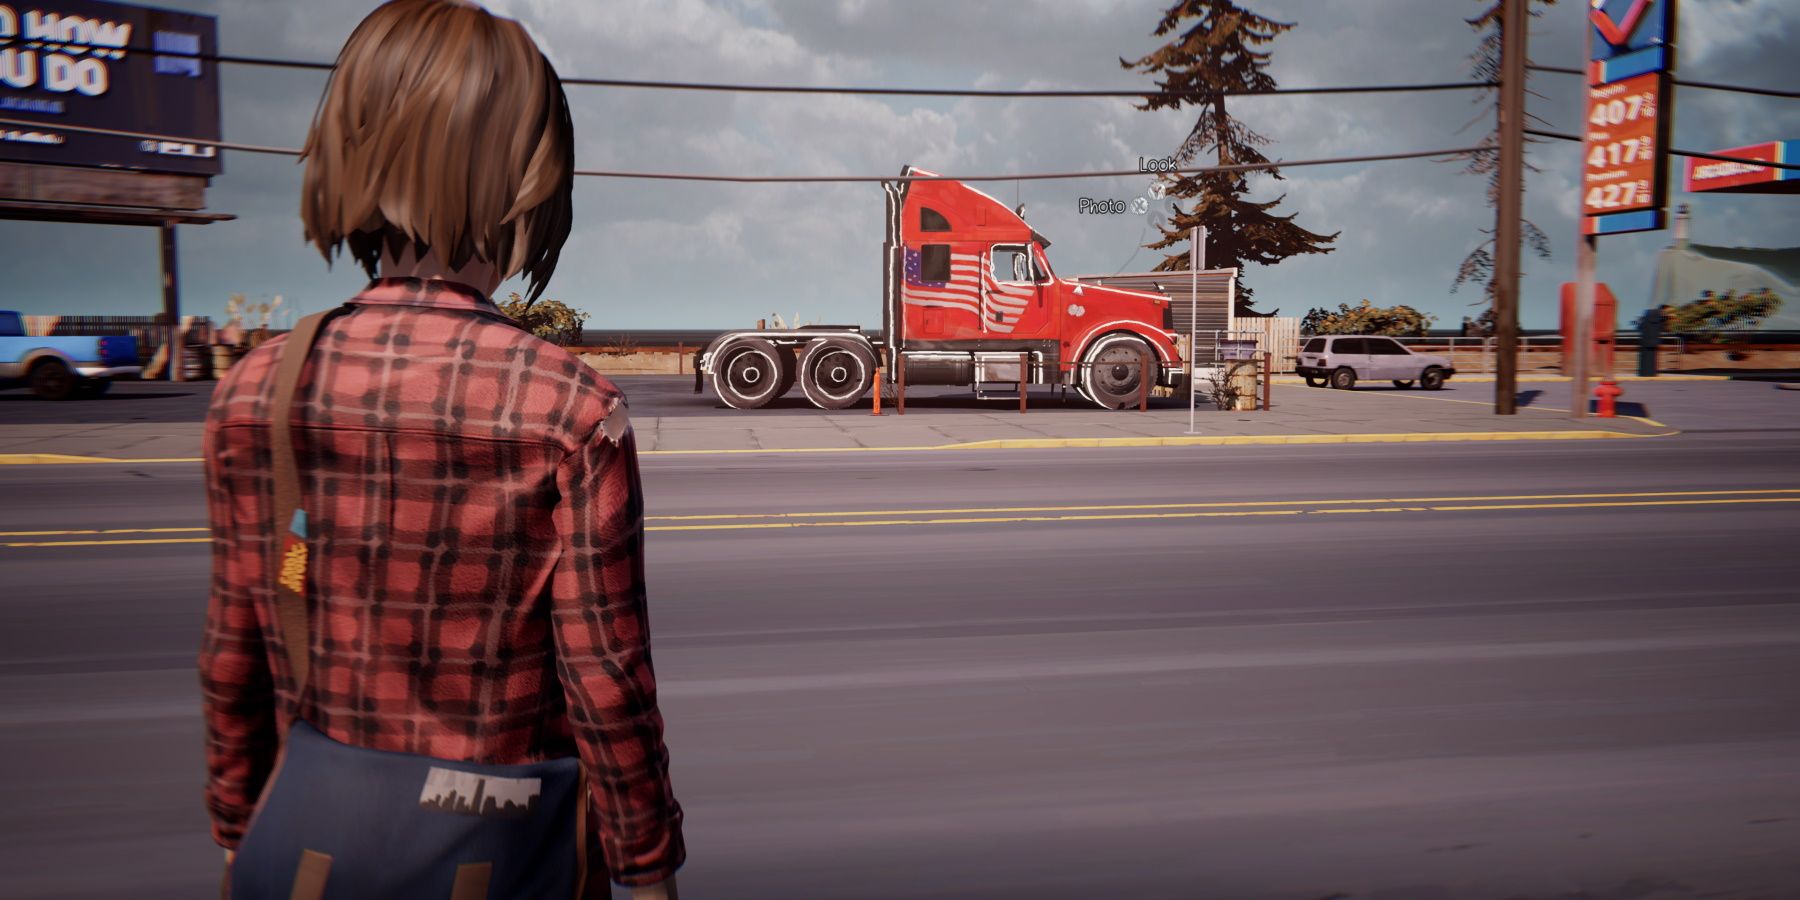 Макс смотрит на красный 18-колесный грузовик в закусочной Two Whales Diner во время третьего эпизода Life is Strange Remastered.